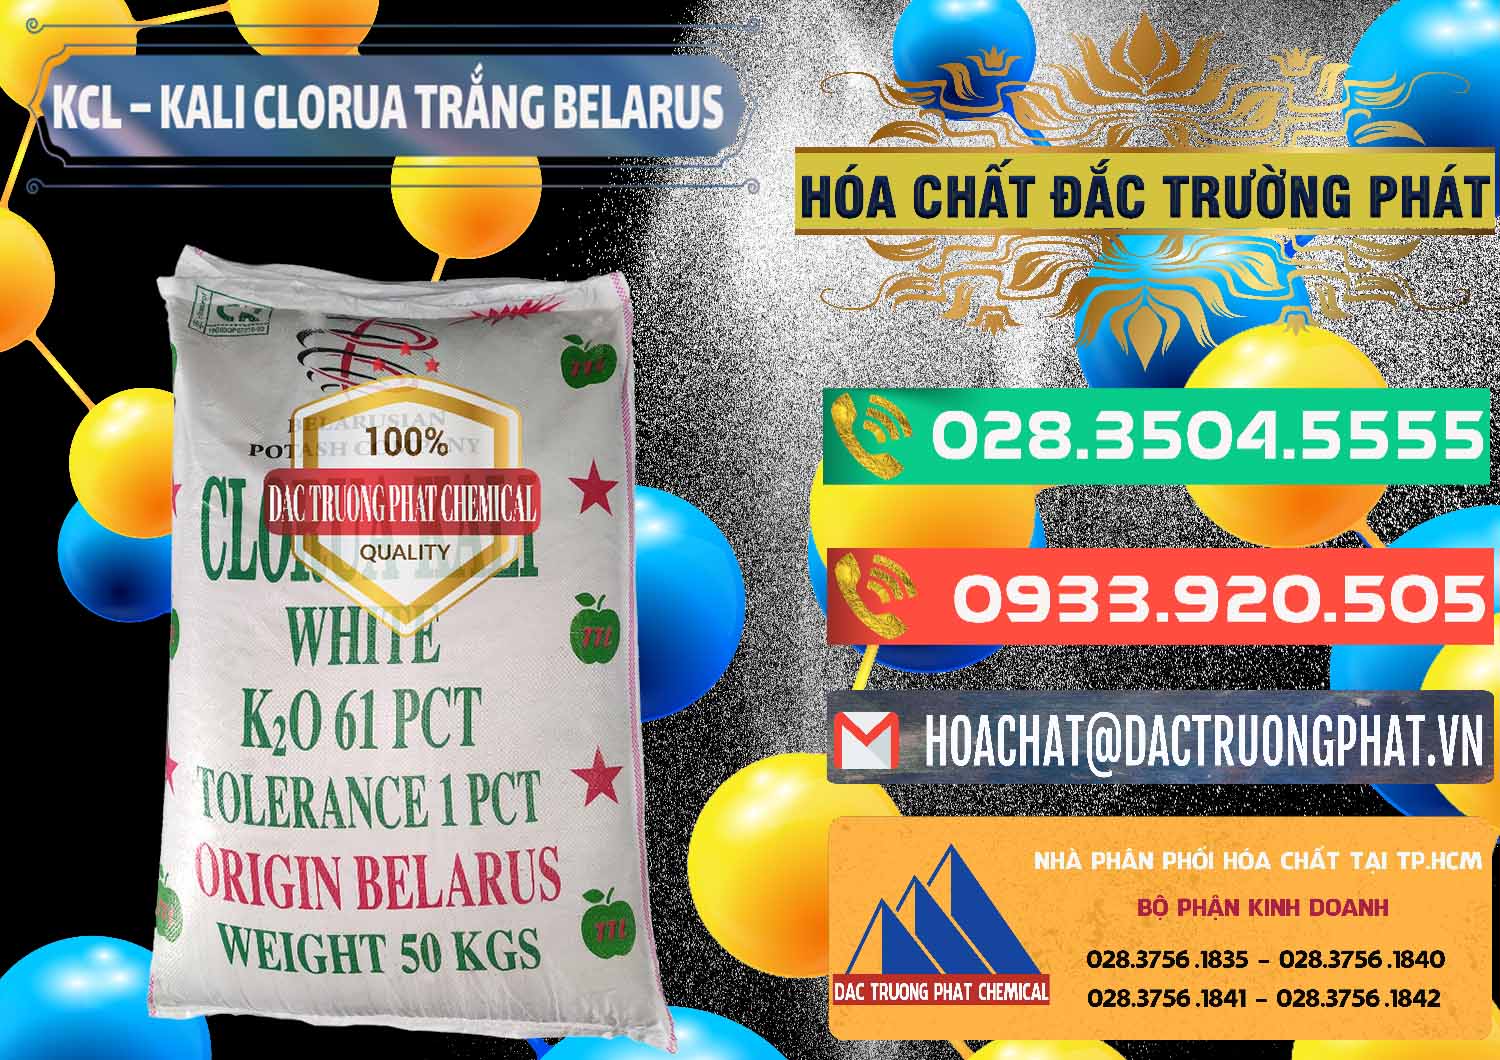 Cty cung cấp - bán KCL – Kali Clorua Trắng Belarus - 0085 - Cty chuyên nhập khẩu & phân phối hóa chất tại TP.HCM - congtyhoachat.com.vn